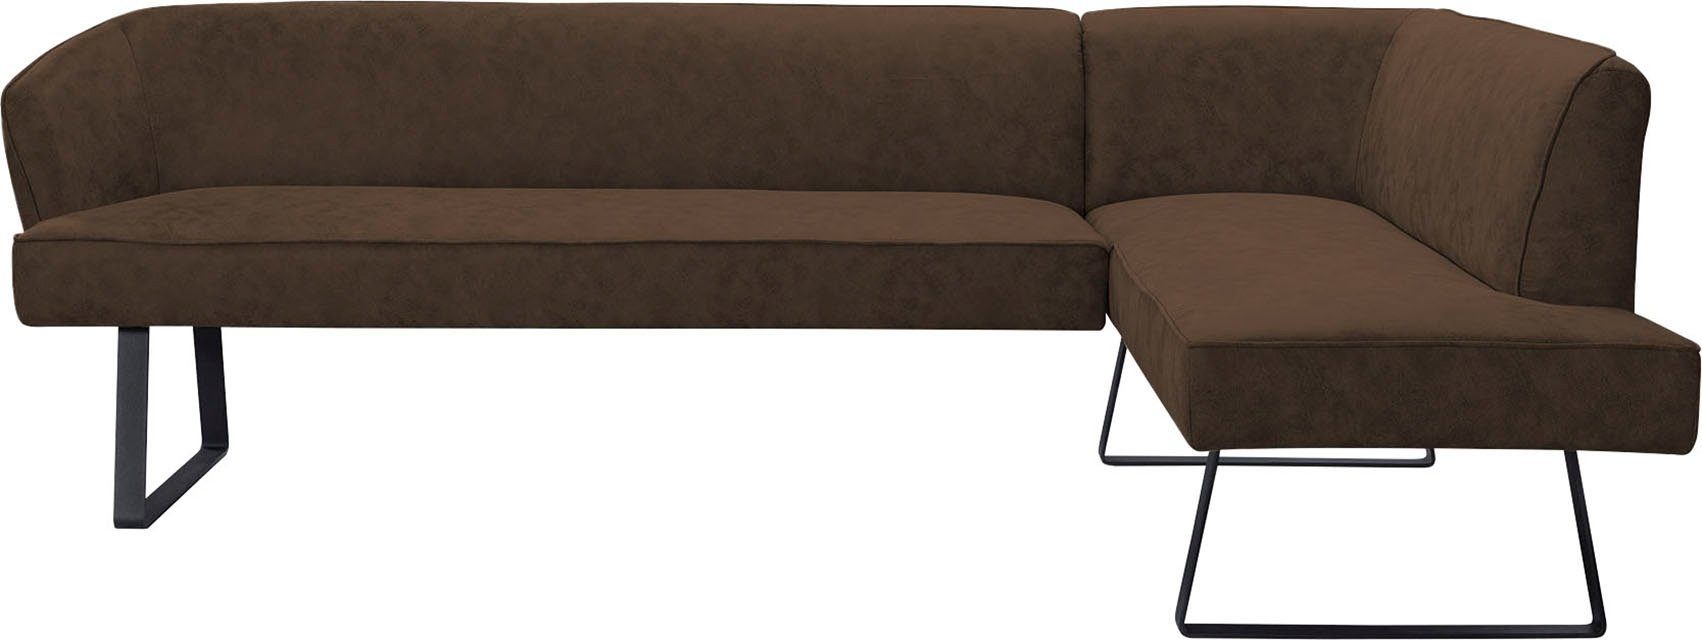 exxpo - sofa in Eckbank fashion Americano, mit Bezug Qualitäten und Metallfüßen, verschiedenen Keder